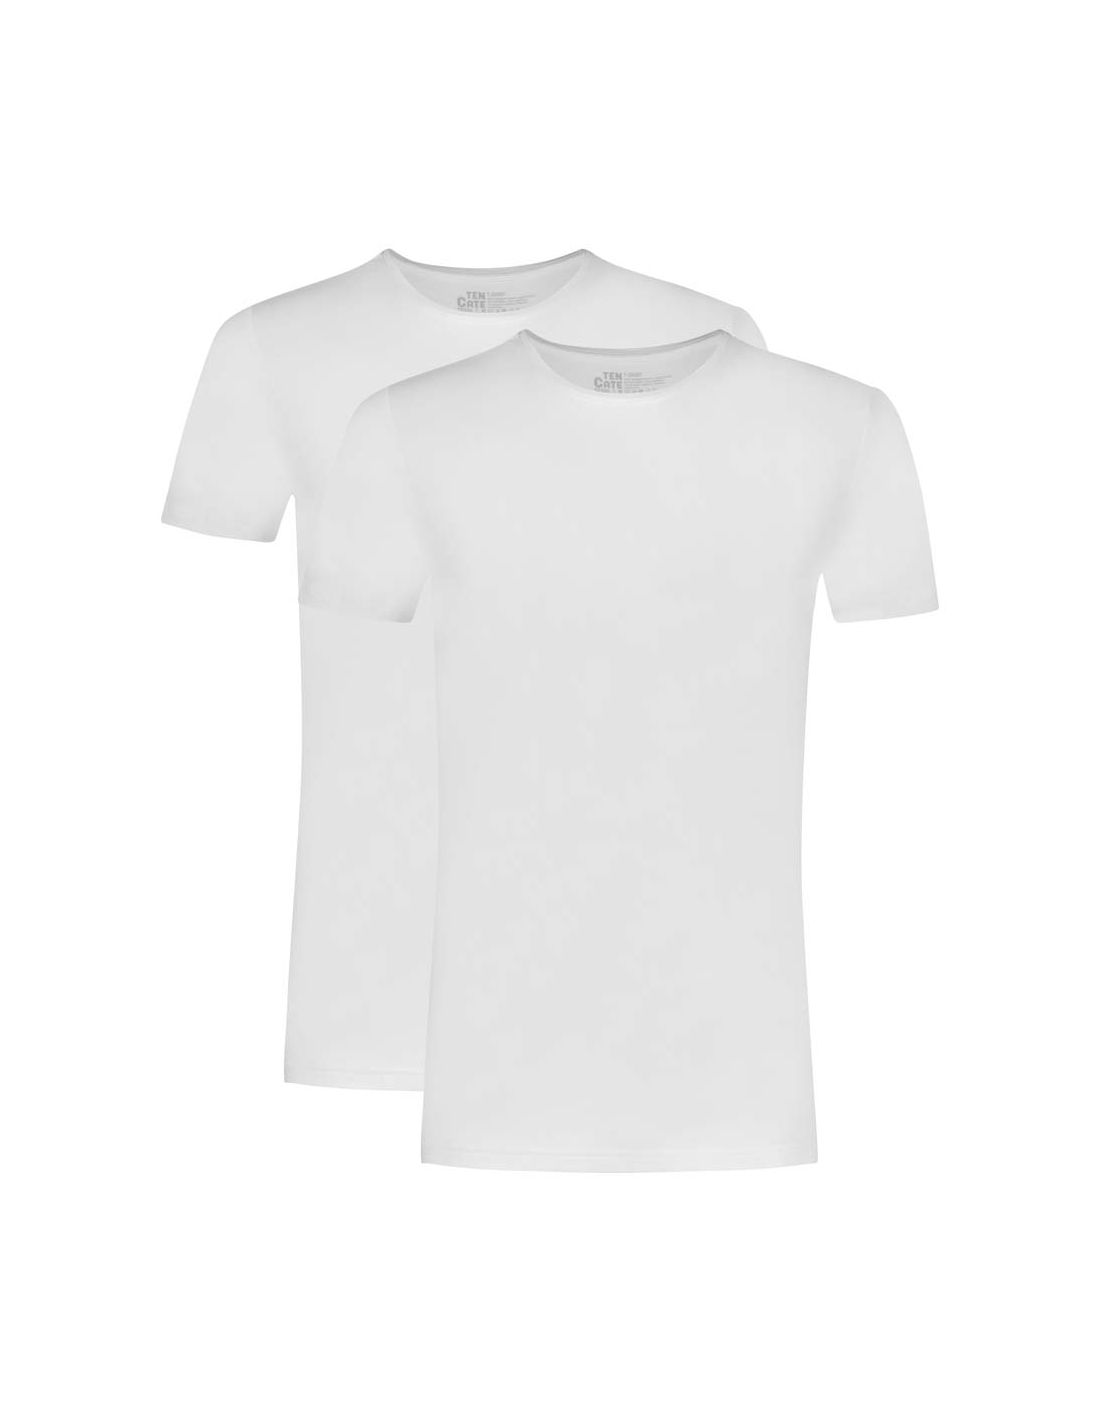 Ten Cate Basics men T-shirt 2 pack white